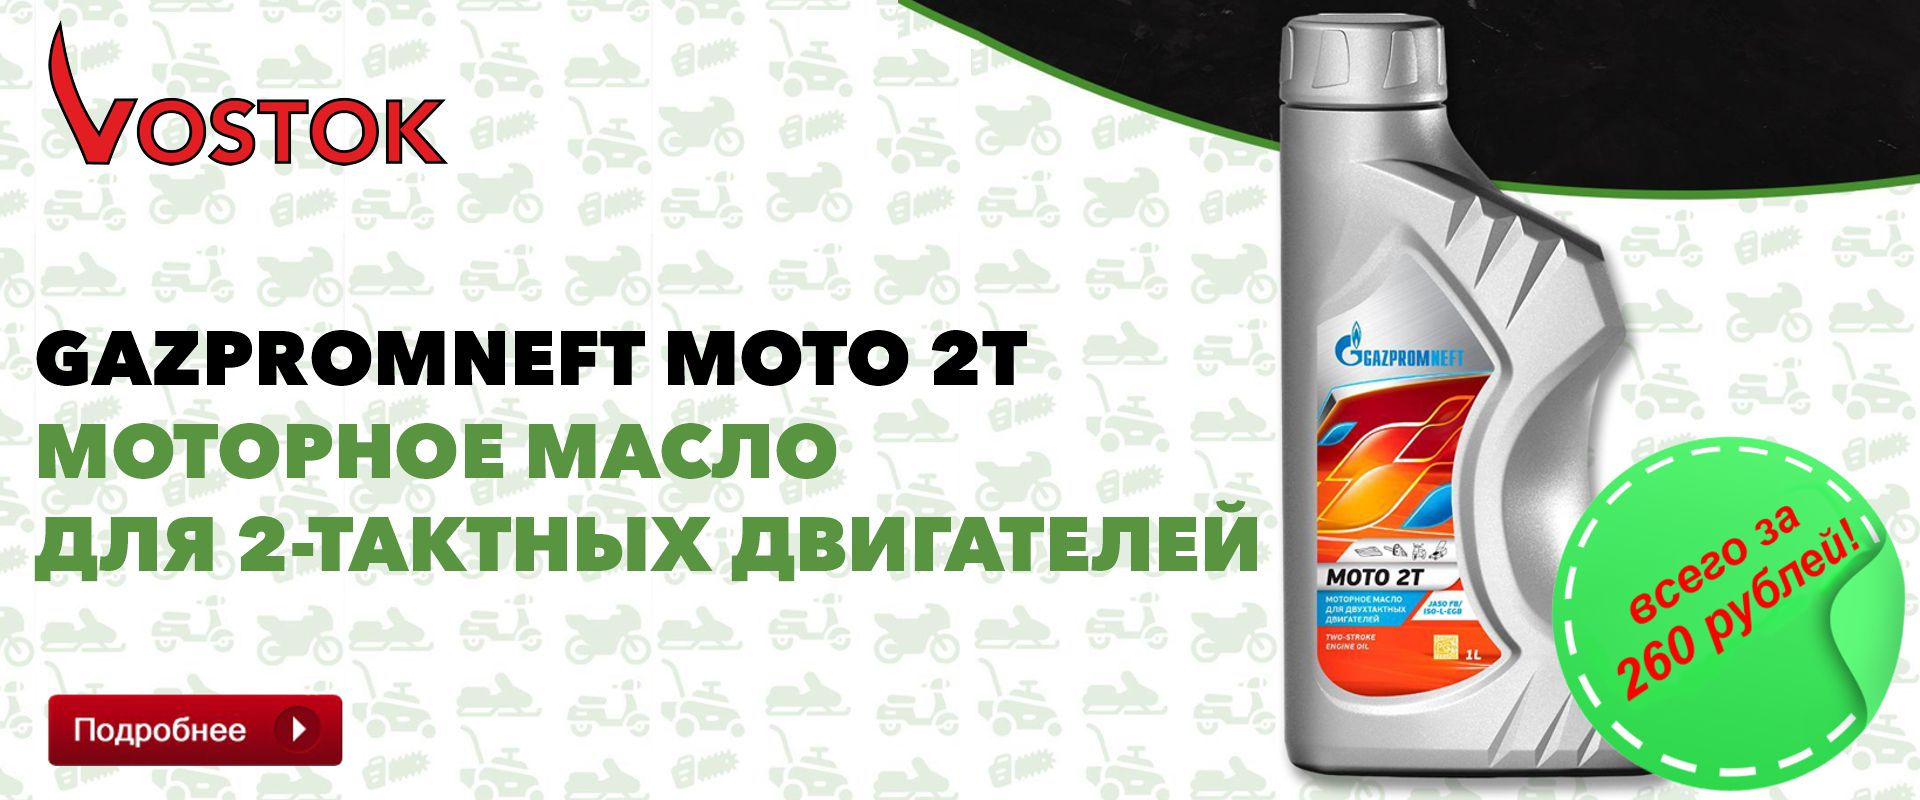 Акция Moto 2t